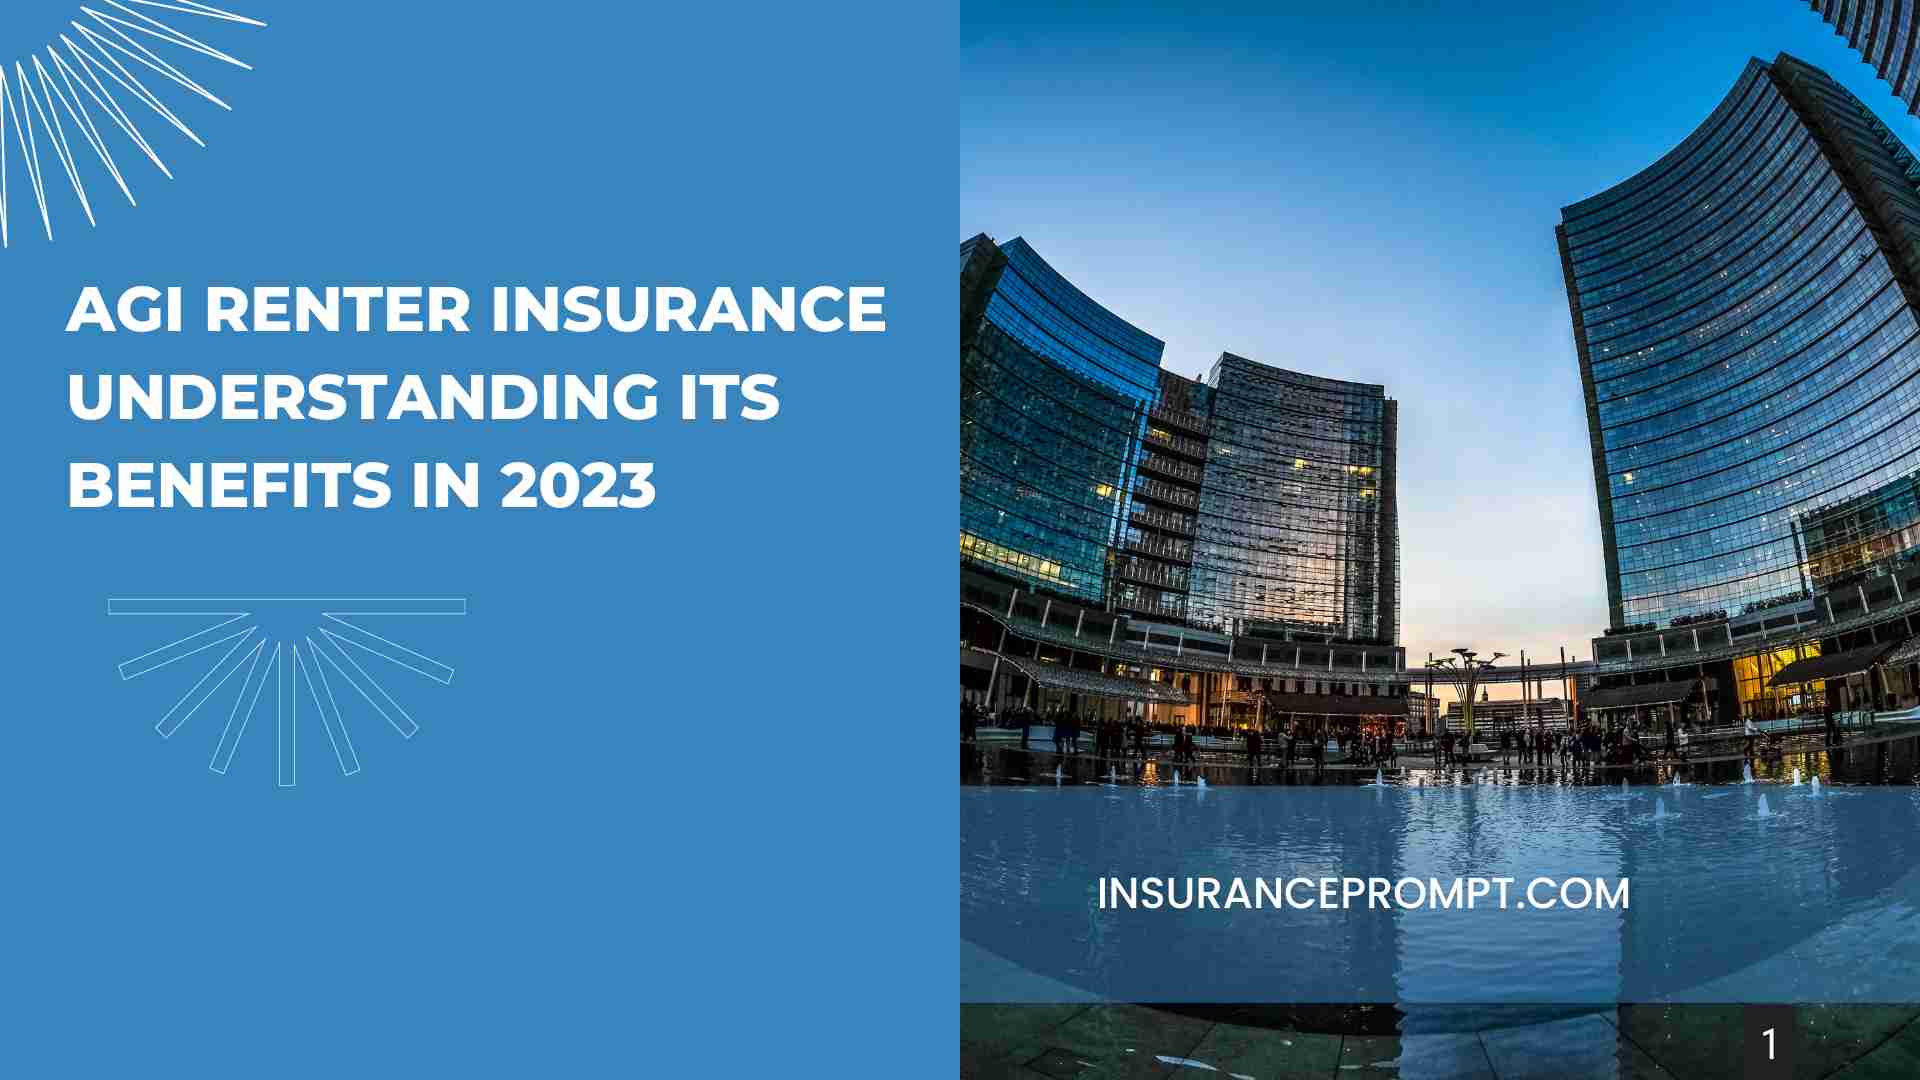 AGI Renter Insurance Understanding Its Benefits in 2023